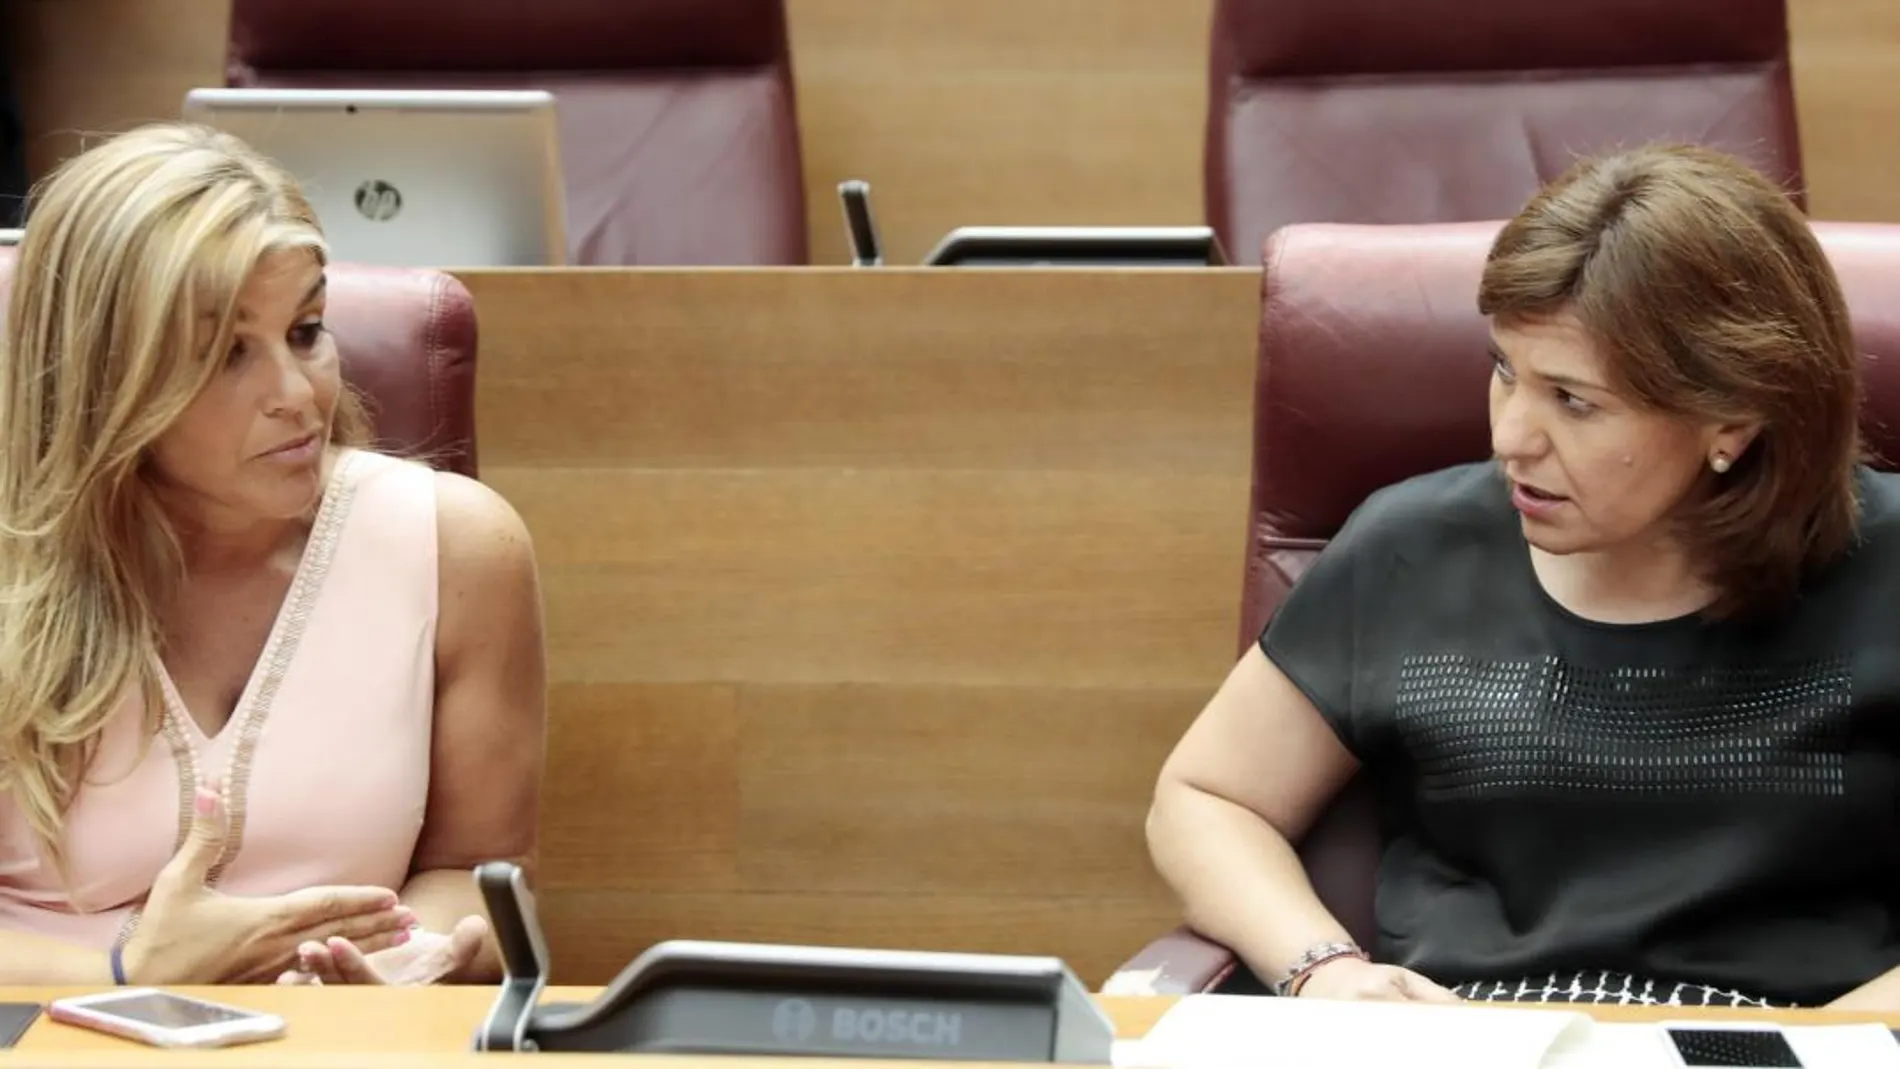 La secretaria general, Eva Ortiz, ha mostrado públicamente su apoyo a Soraya Sáenz de Santamaría, mientras que la presidenta del PPCV, Isabel Bonig, ha pedido que se conforme una lista de unidad y ha evitado dar su respaldo a ningún candidato (LA RAZÓN)